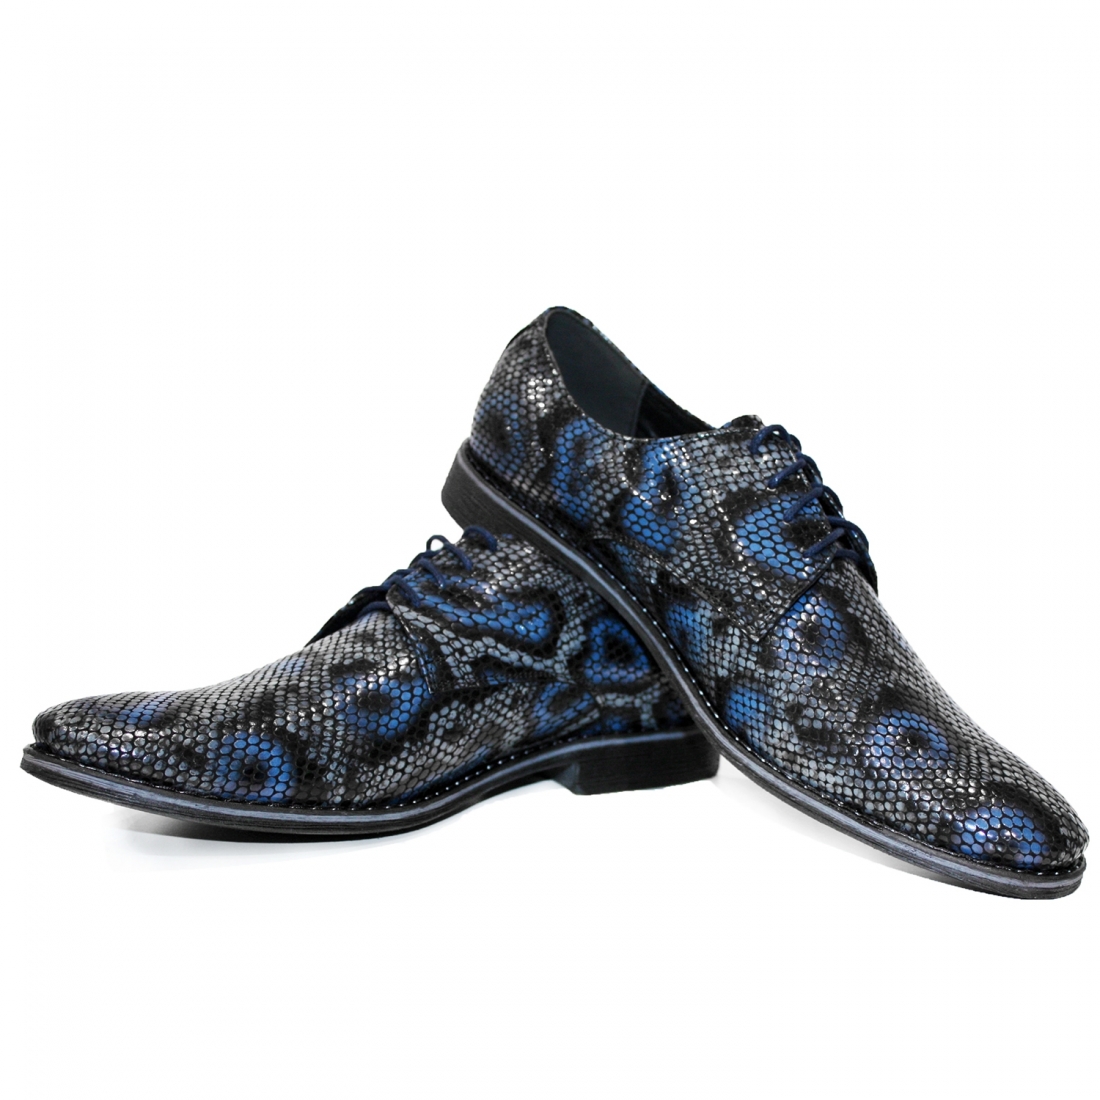 Modello Rapterr - Scarpe Classiche - Handmade Colorful Italian Leather Shoes